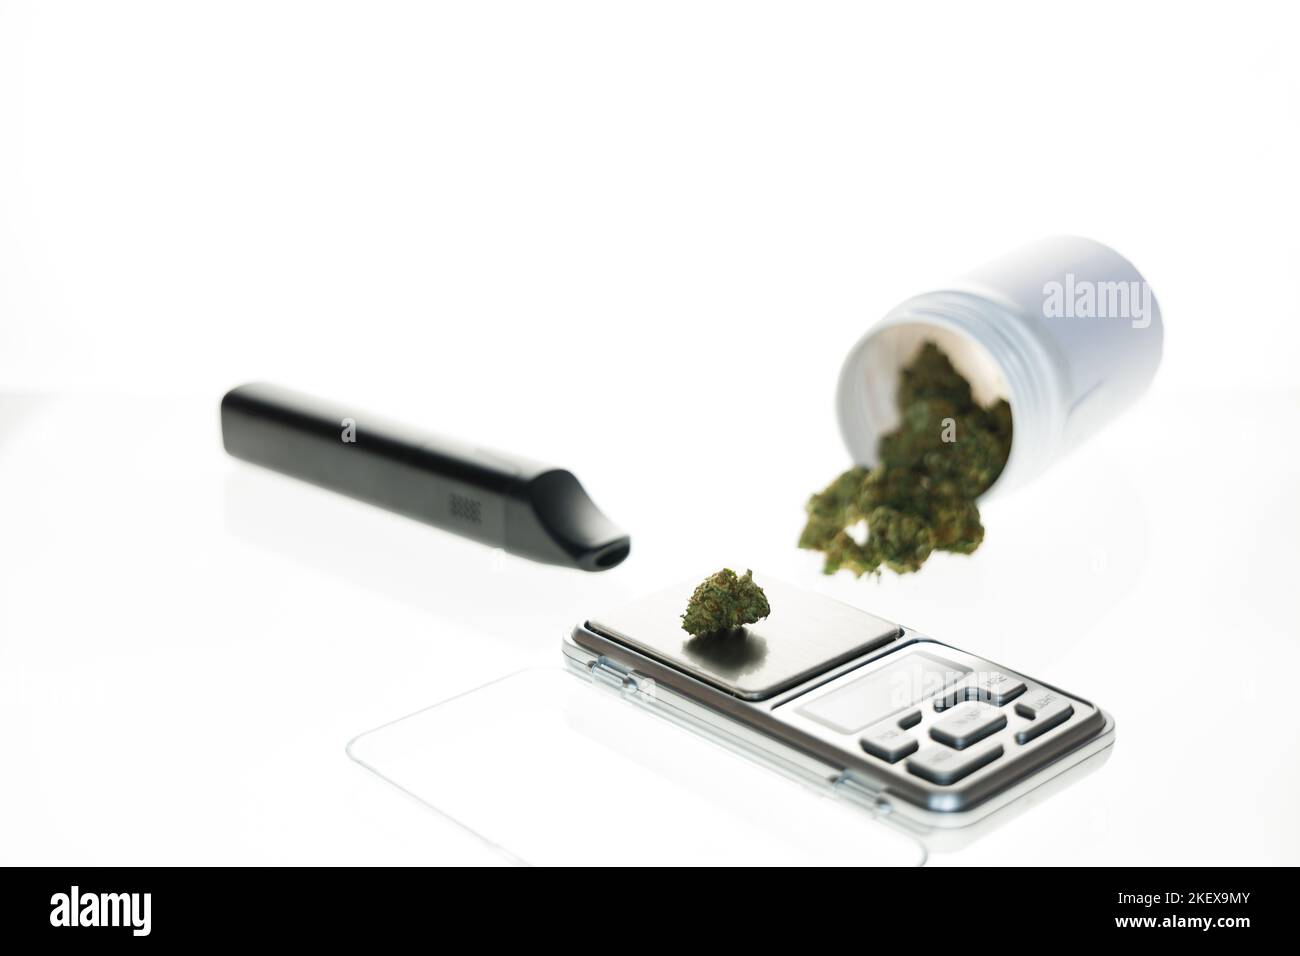 FLOS di cannabis, marijuana medica in contenitore bianco accanto alla scala di precisione e vaporizzatore, modo sicuro per prendere la medicina Foto Stock